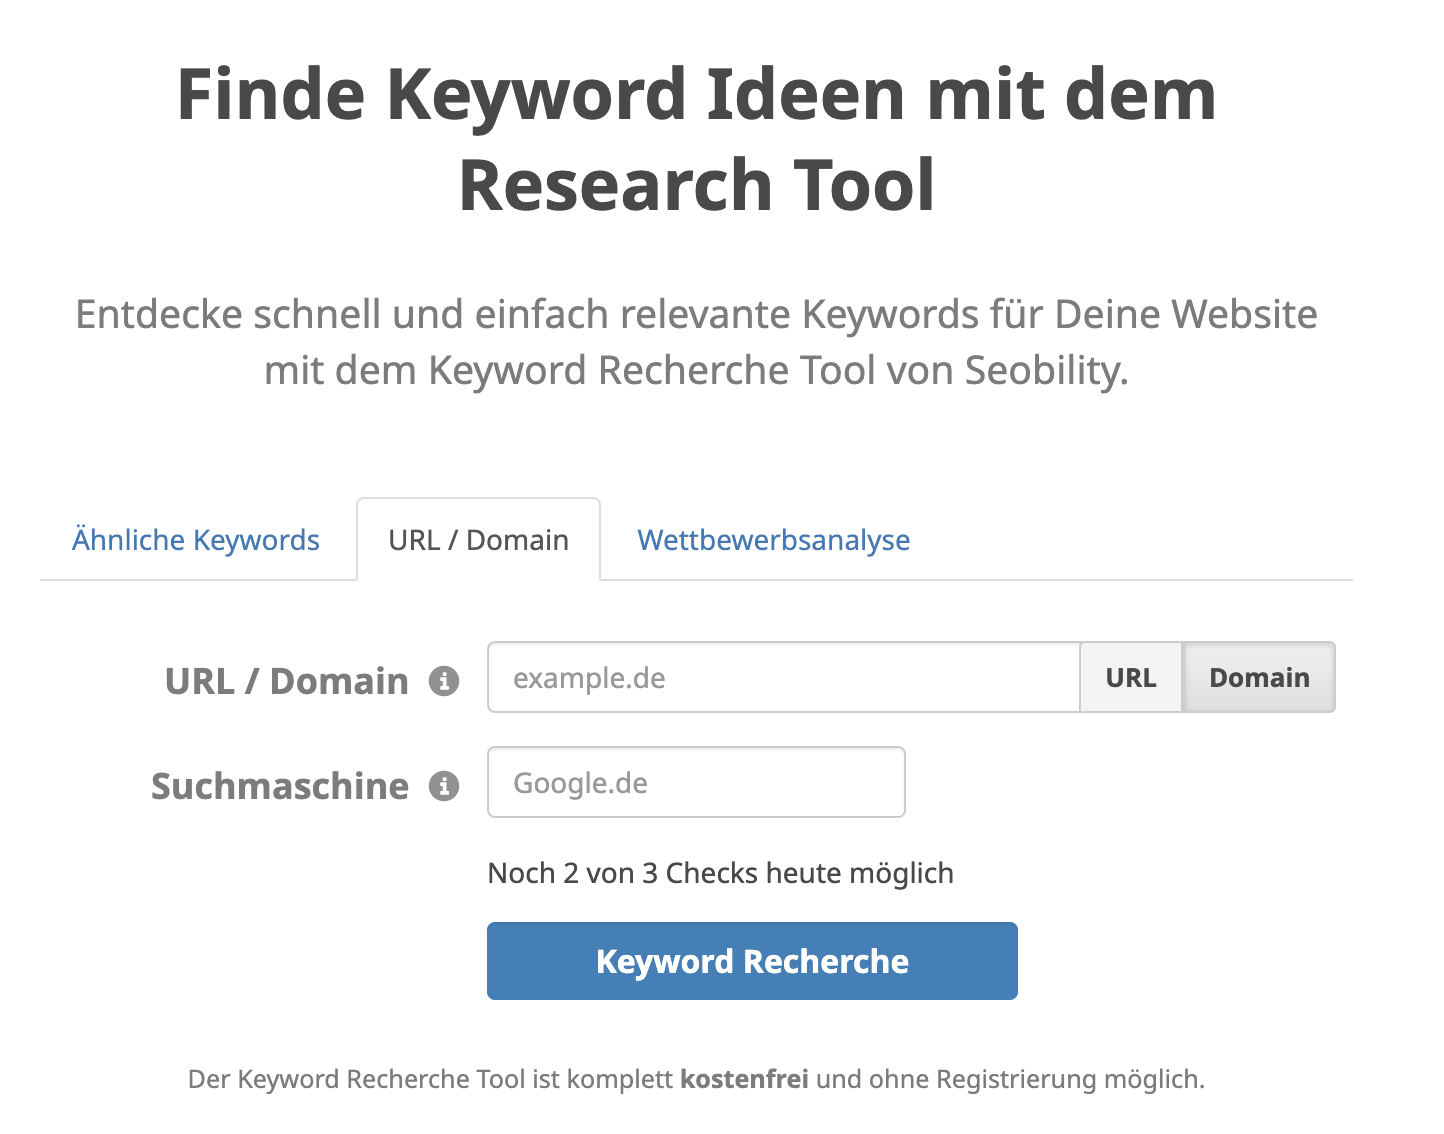 die URL / Domain Analyse des Keyword Research Tools